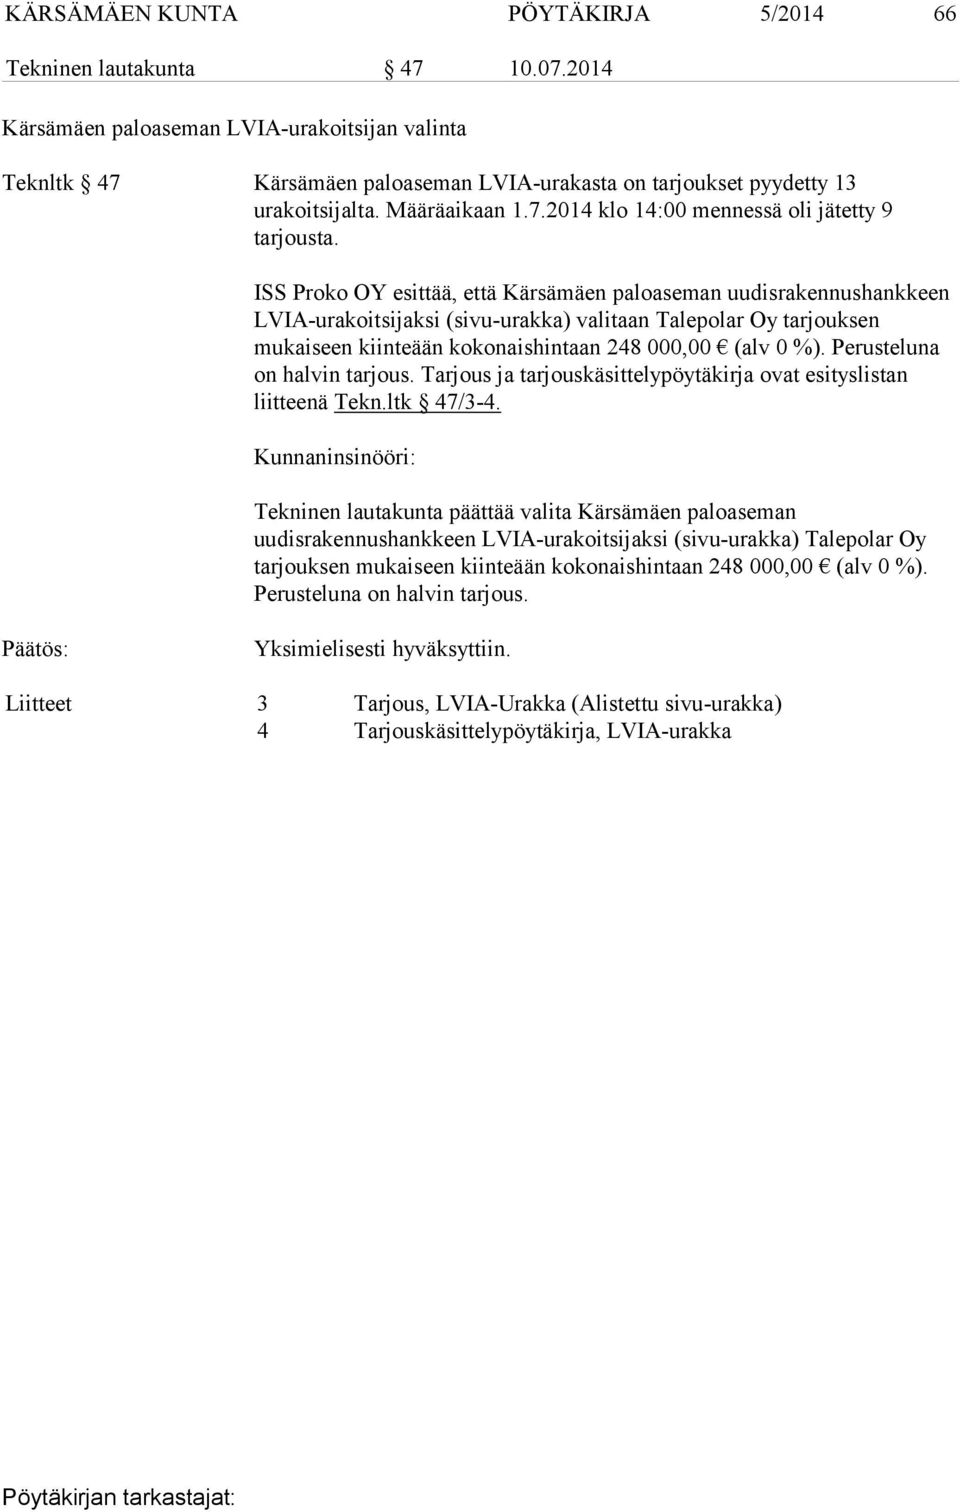 ISS Proko OY esittää, että Kärsämäen paloaseman uudisrakennushankkeen LVIA-urakoitsijaksi (sivu-urakka) valitaan Talepolar Oy tarjouksen mukaiseen kiinteään kokonaishintaan 248 000,00 (alv 0 %).